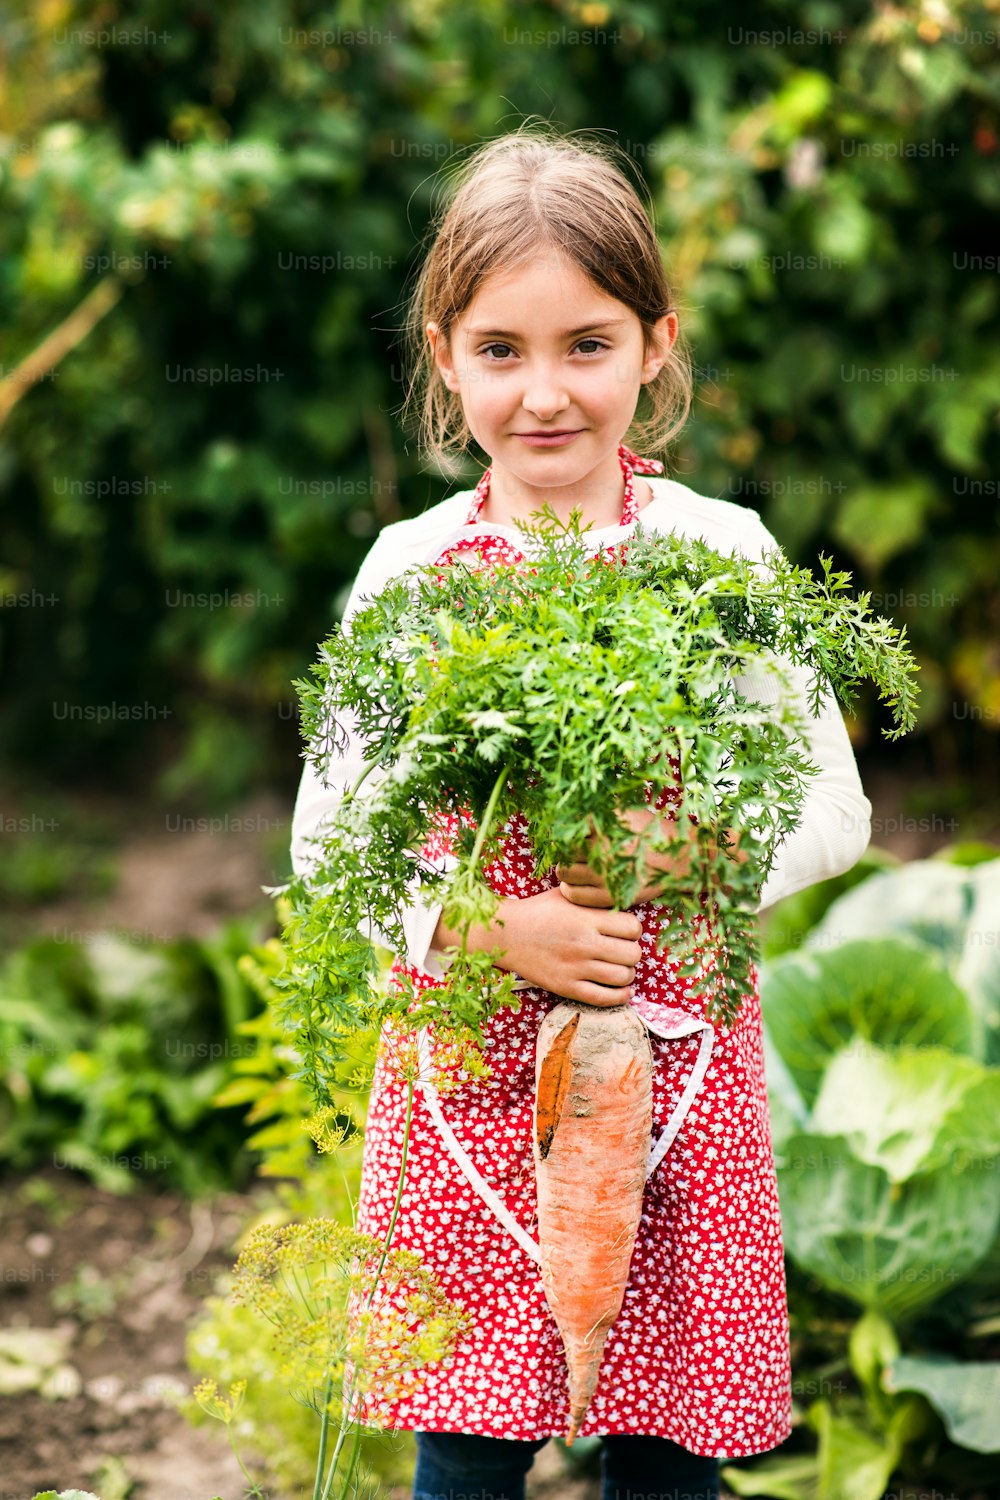 割り当てで野菜を収穫する小さな女の子。大きなニンジンを持つガーデニングの女の子。